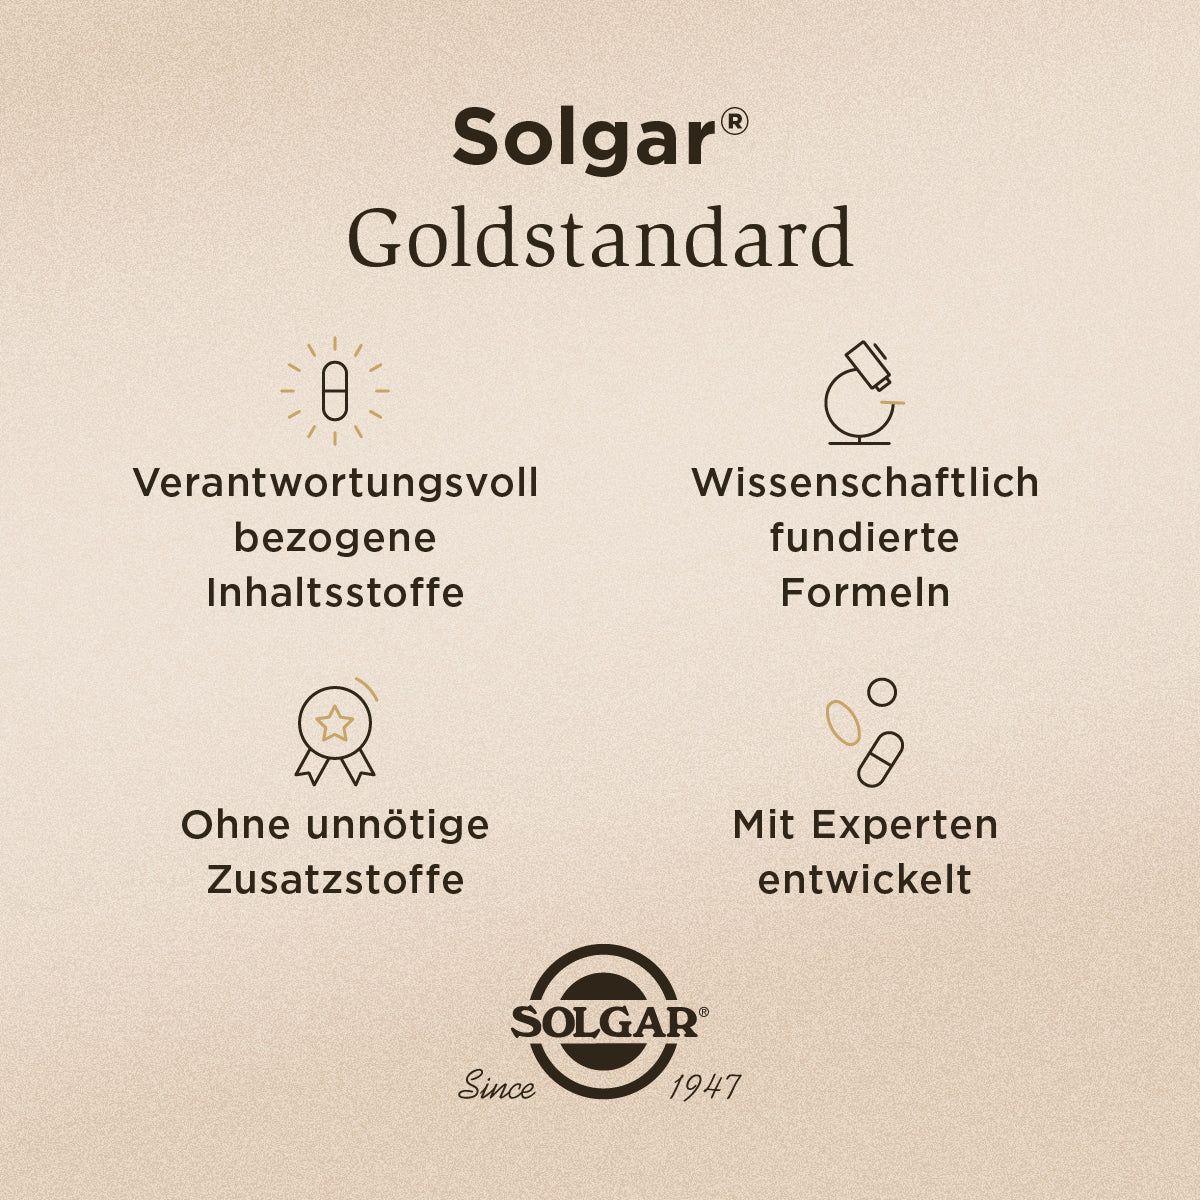 Solgar Goldstandard Grafik bei Ekat Bundle